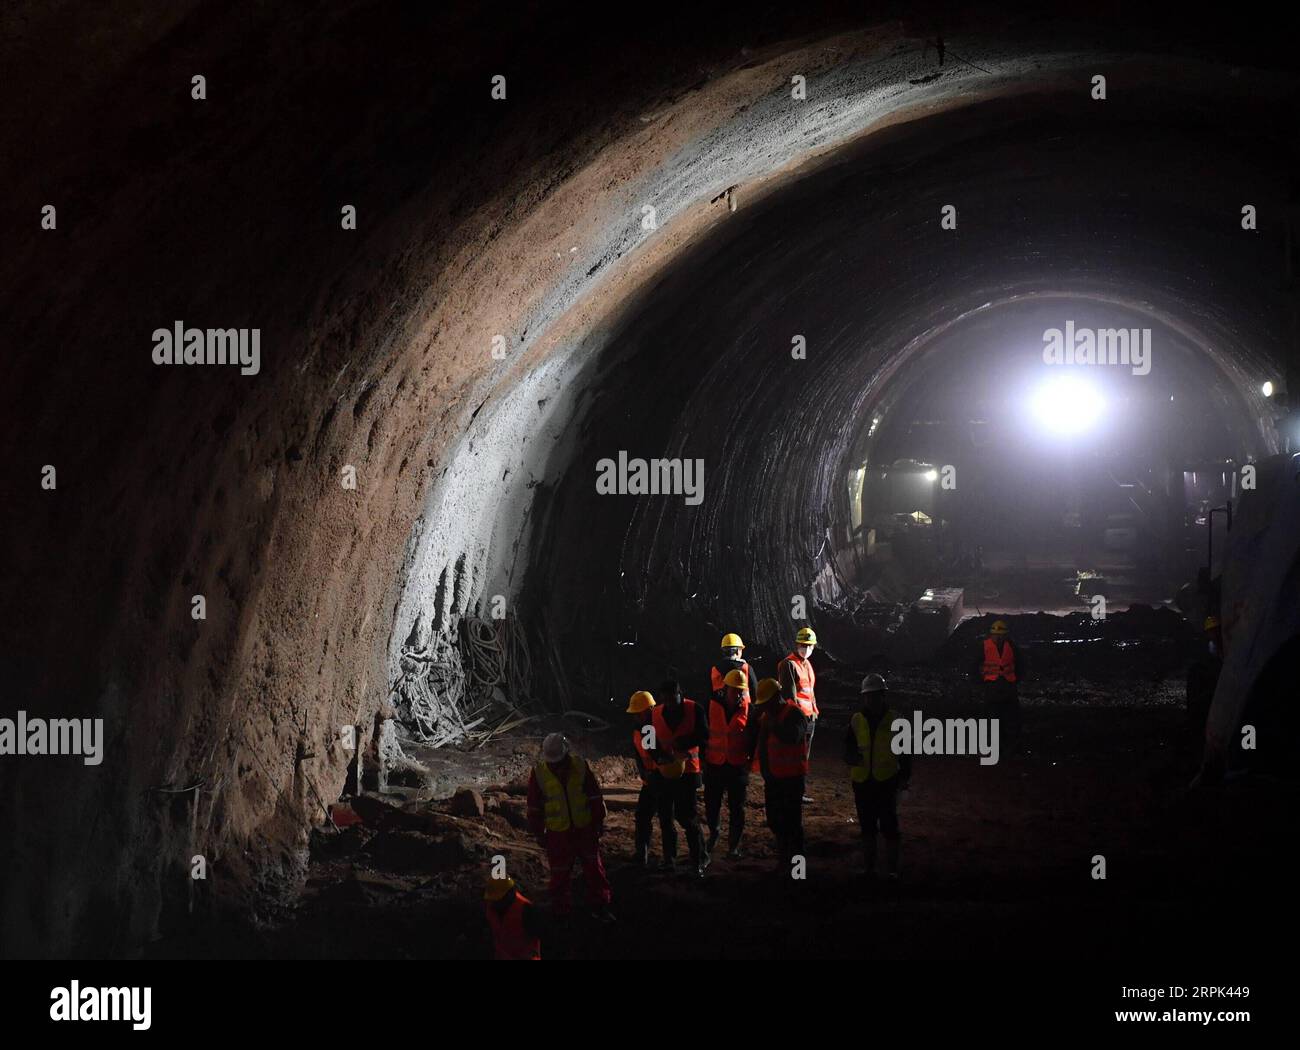 191228 -- BINZHOU, 28 décembre 2019 -- une photo prise le 28 décembre 2019 montre le chantier de construction du tunnel de Binxian dans la ville de Binzhou, dans la province du Shaanxi, au nord-ouest de la Chine. Le tunnel Binxian de 14,251km du Yinchuan-Xi, un chemin de fer à grande vitesse, a été foré jusqu'à samedi. CHINE-NINGXIA-BINZHOU-TUNNEL CN ZhangxBowen PUBLICATIONxNOTxINxCHN Banque D'Images